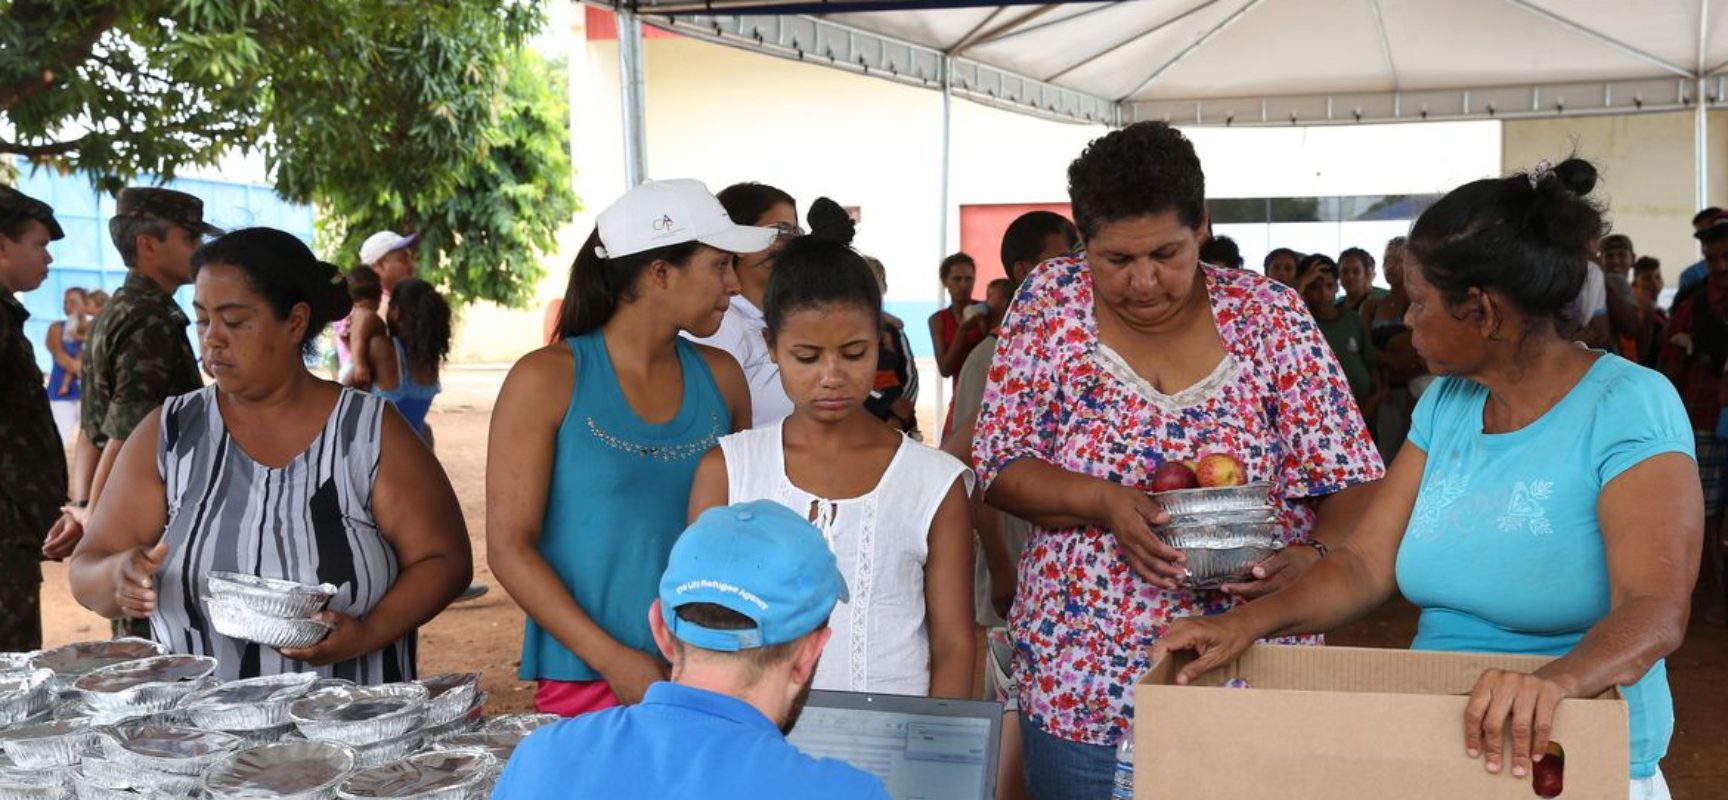 Programa da ONU ajuda venezuelanas a refazer a vida no Brasil